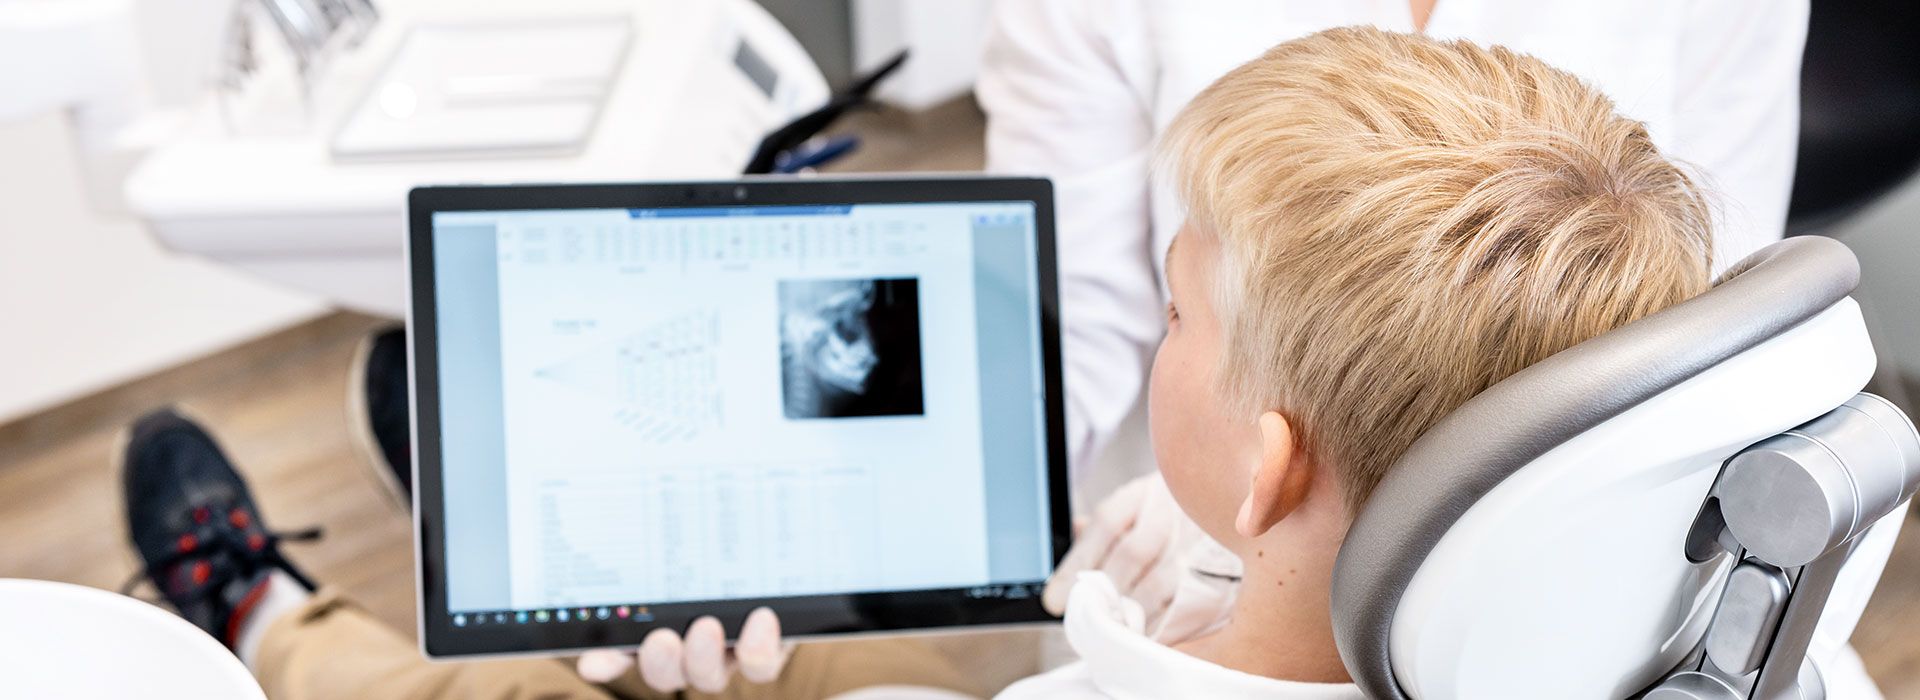 Kopfbild: Behandlungssituation, in der sich eine Junge ein Röntgenbild auf einem Tablet ansieht.